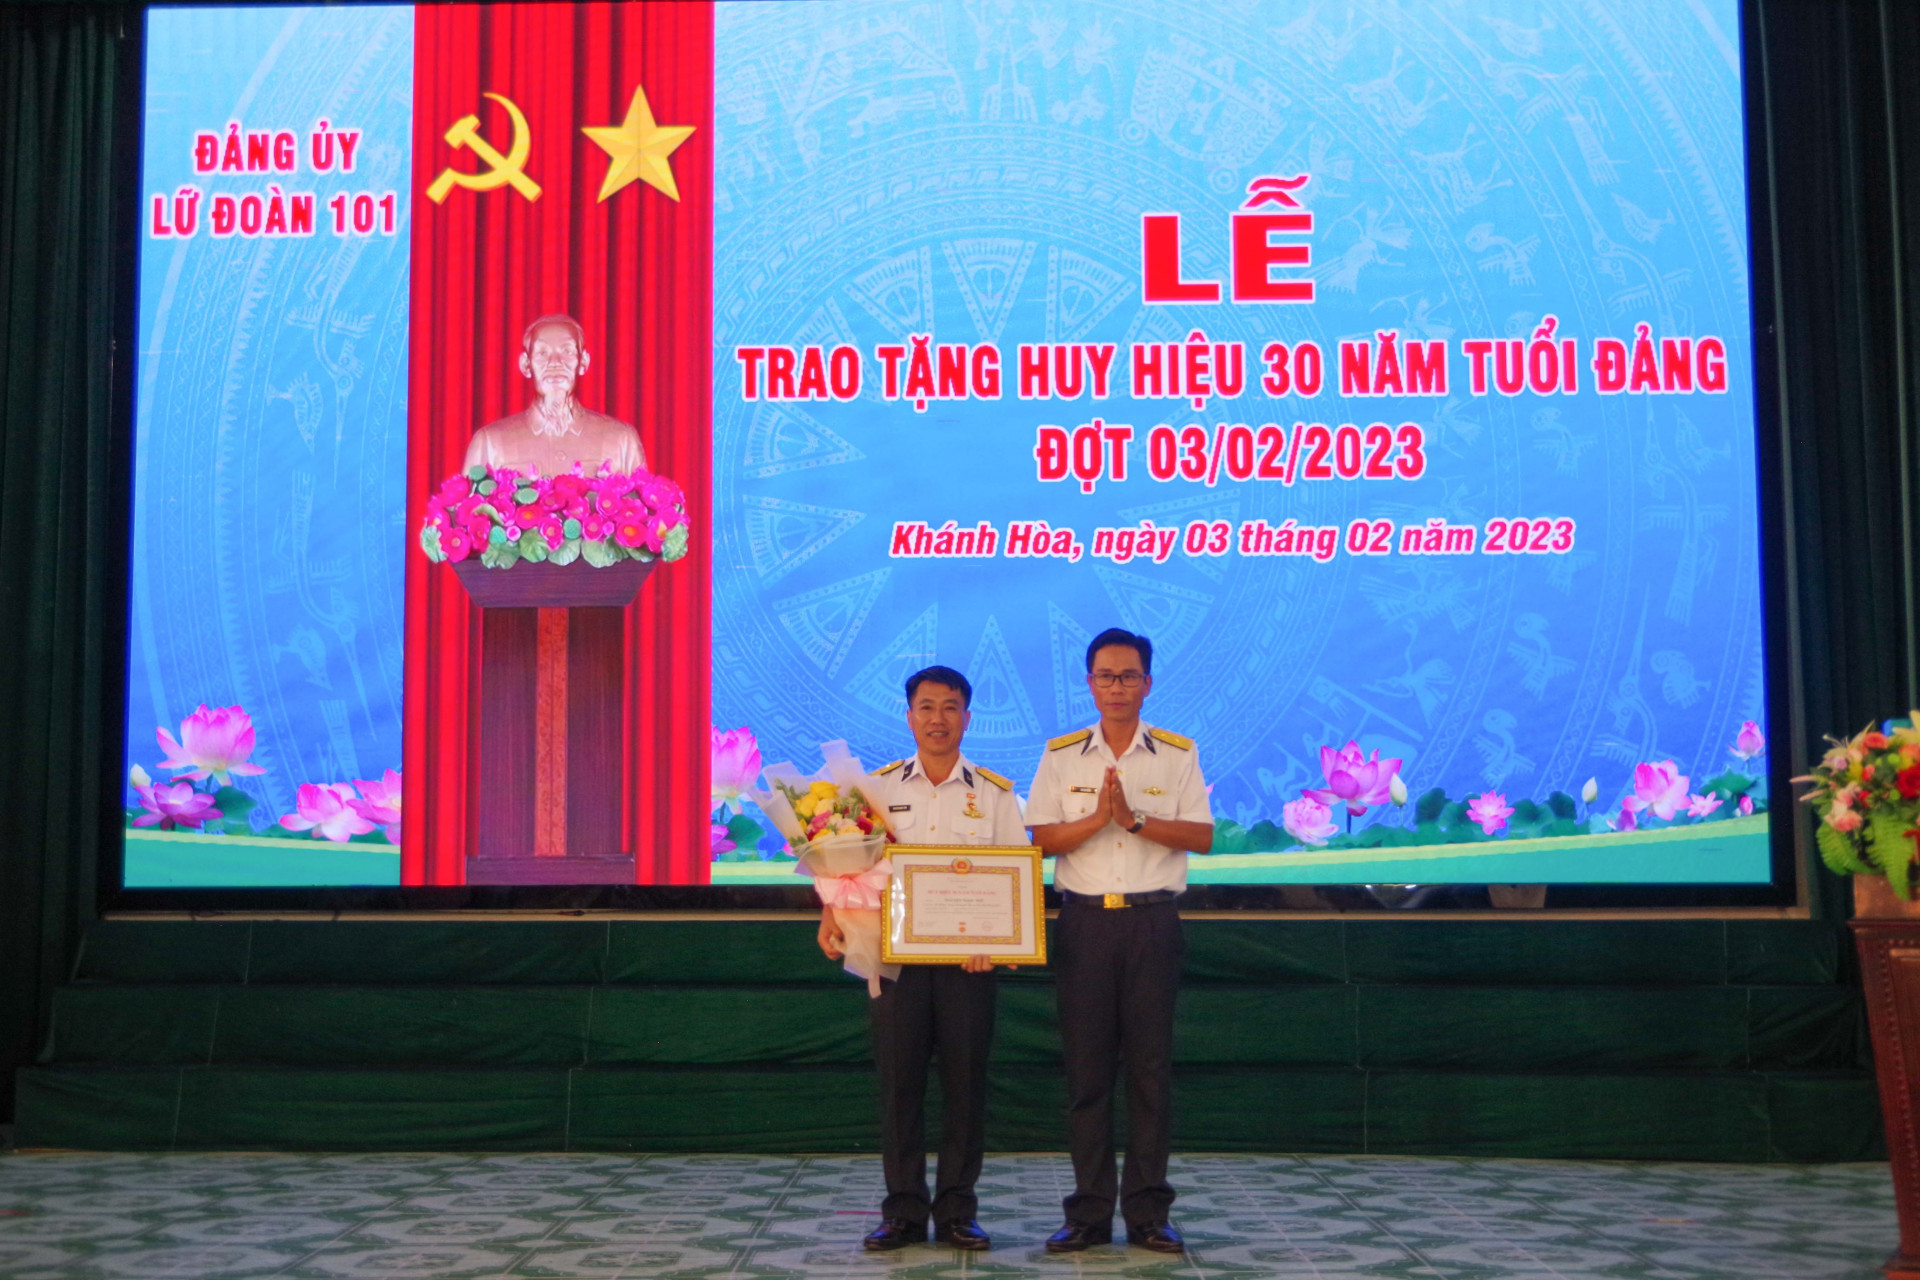 Thủ trưởng Lữ đoàn 101 trao huy hiệu 30 năm tuổi Đảng cho đảng viên Nguyễn Ngọc Sơn